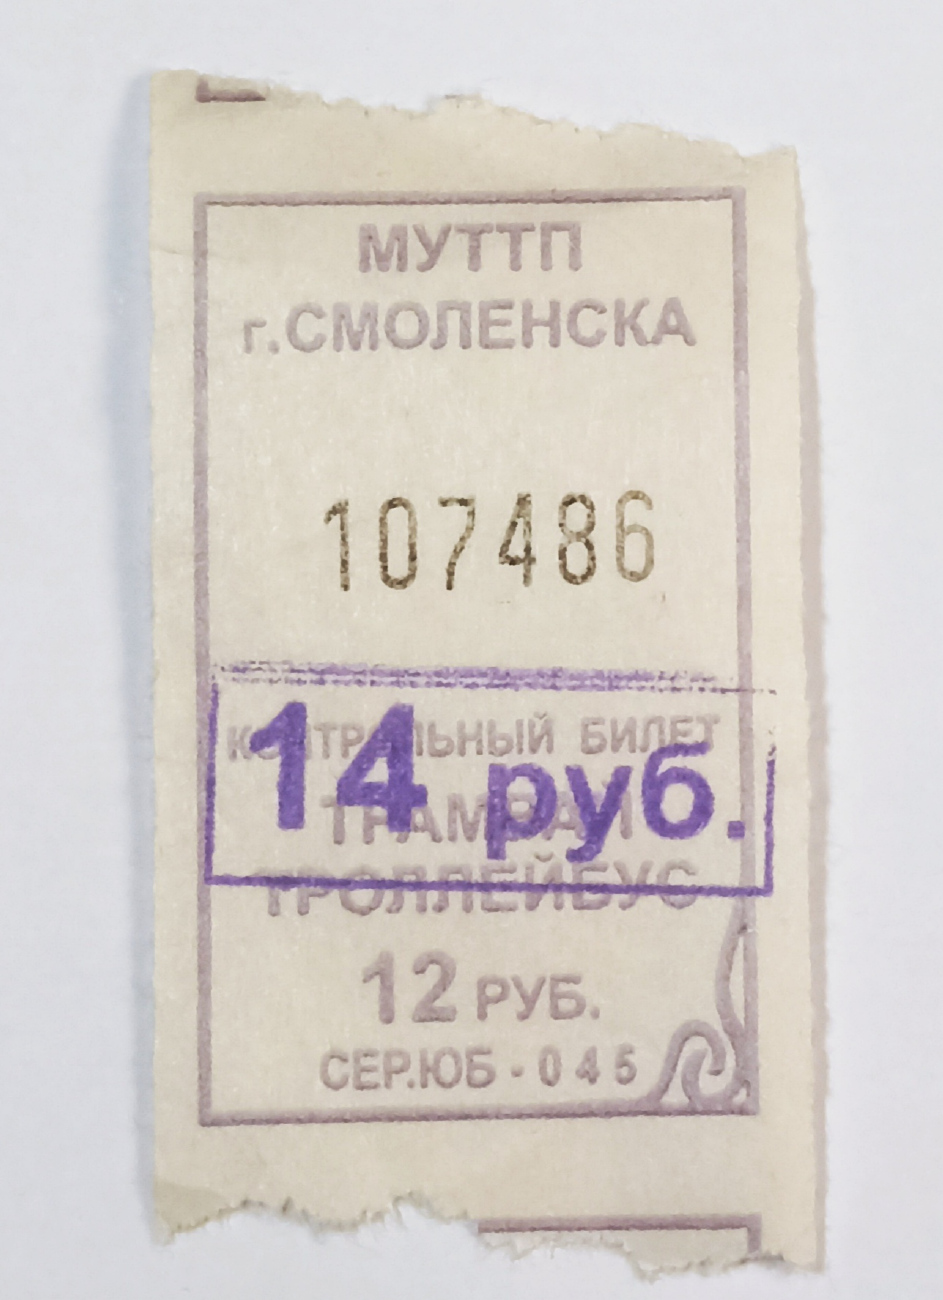 Smolensk — Tickets